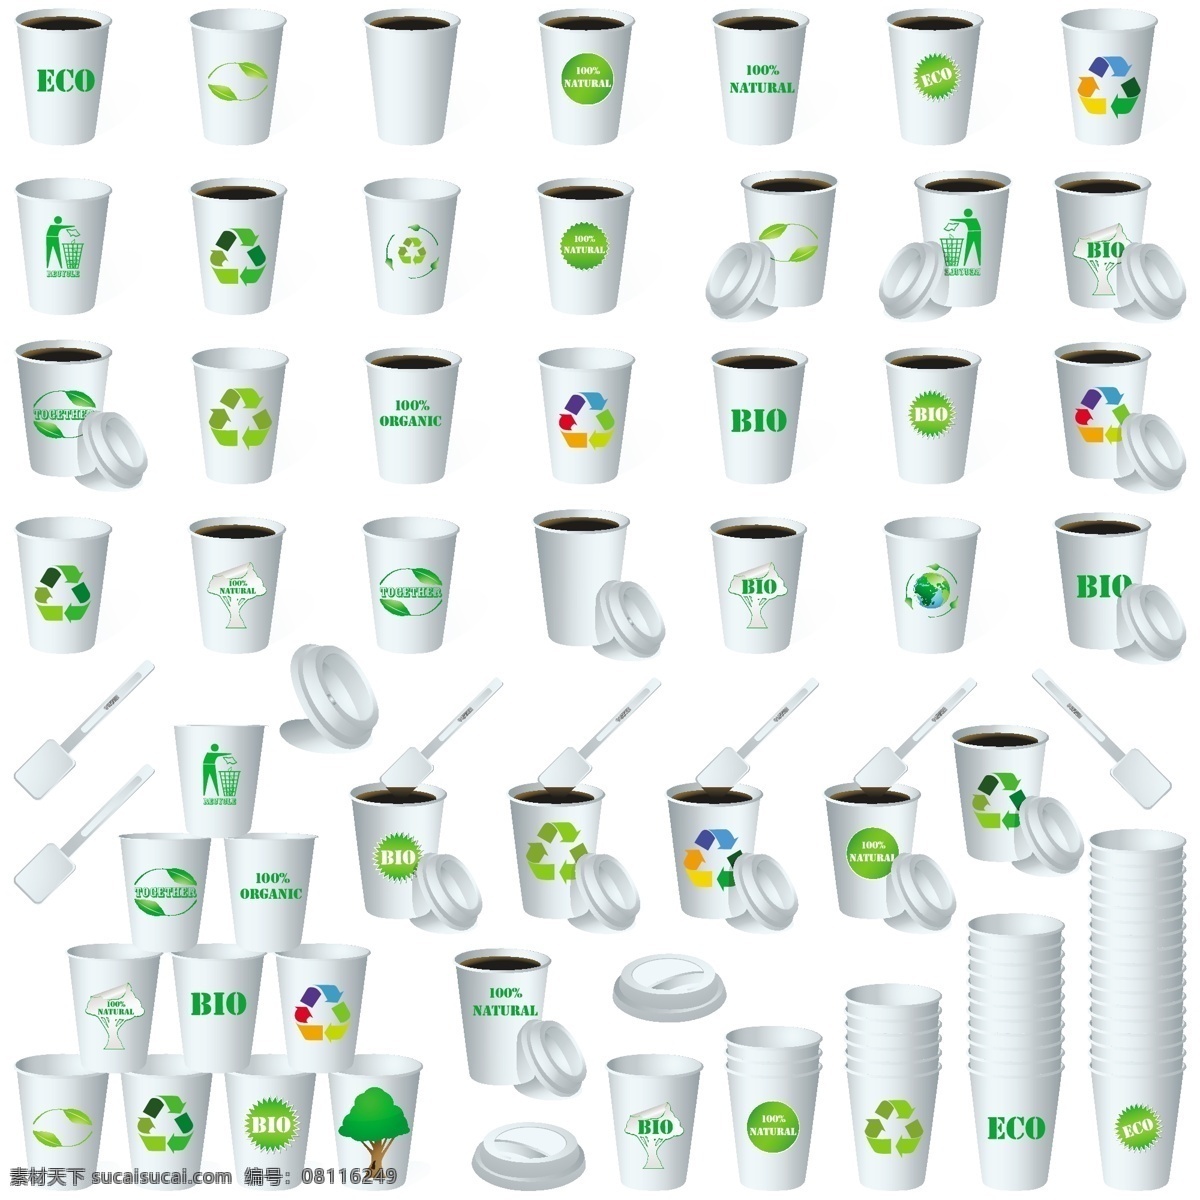 生态 环保 纸杯 矢量 环保标志 循环箭头 纸杯设计 生态纸杯 搅棒 杯盖 可降解纸杯